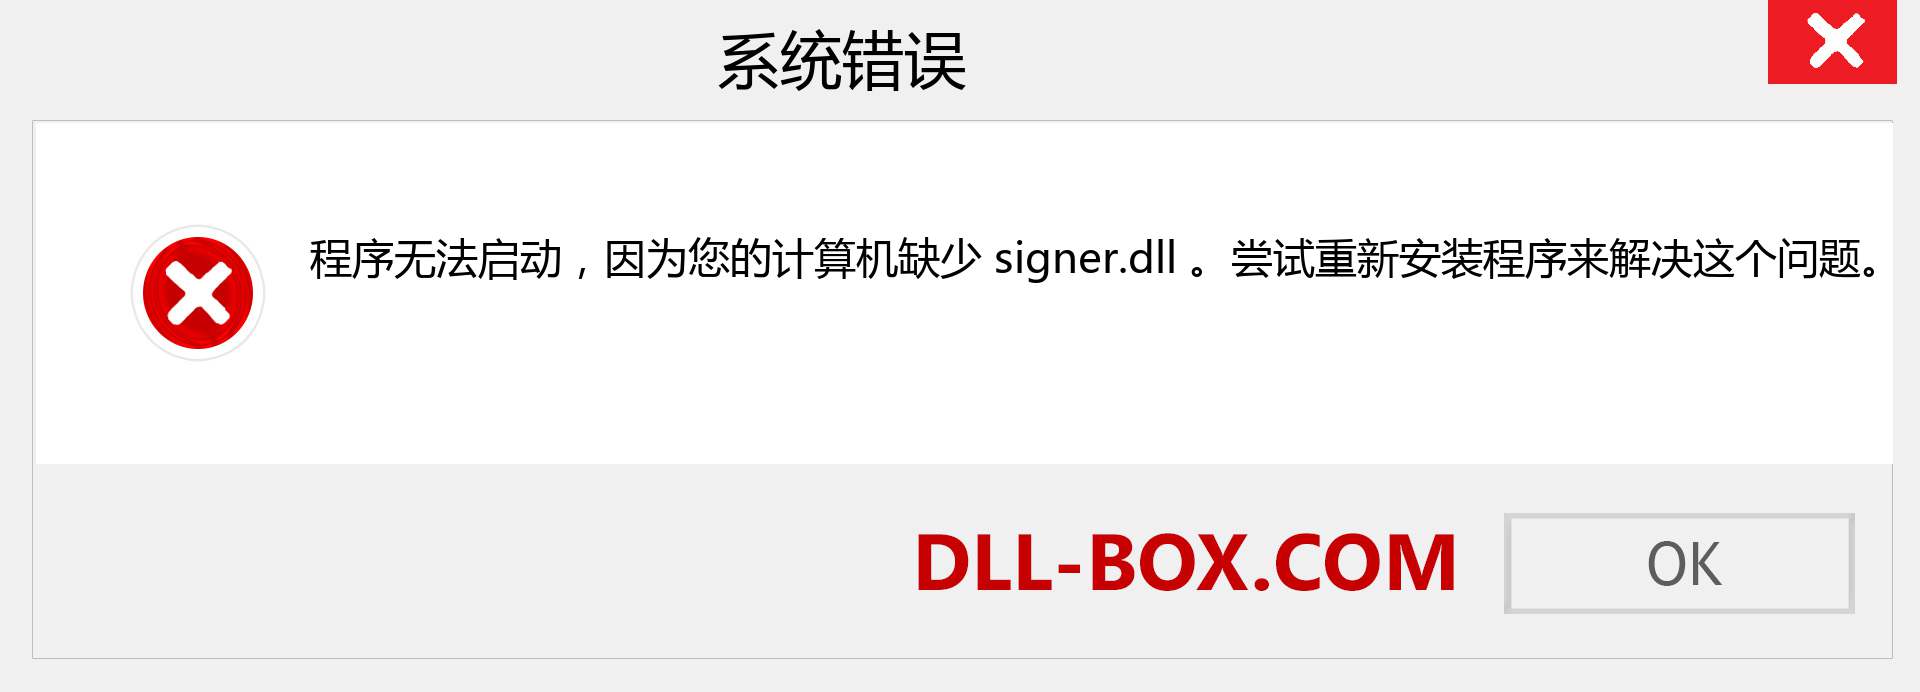 signer.dll 文件丢失？。 适用于 Windows 7、8、10 的下载 - 修复 Windows、照片、图像上的 signer dll 丢失错误